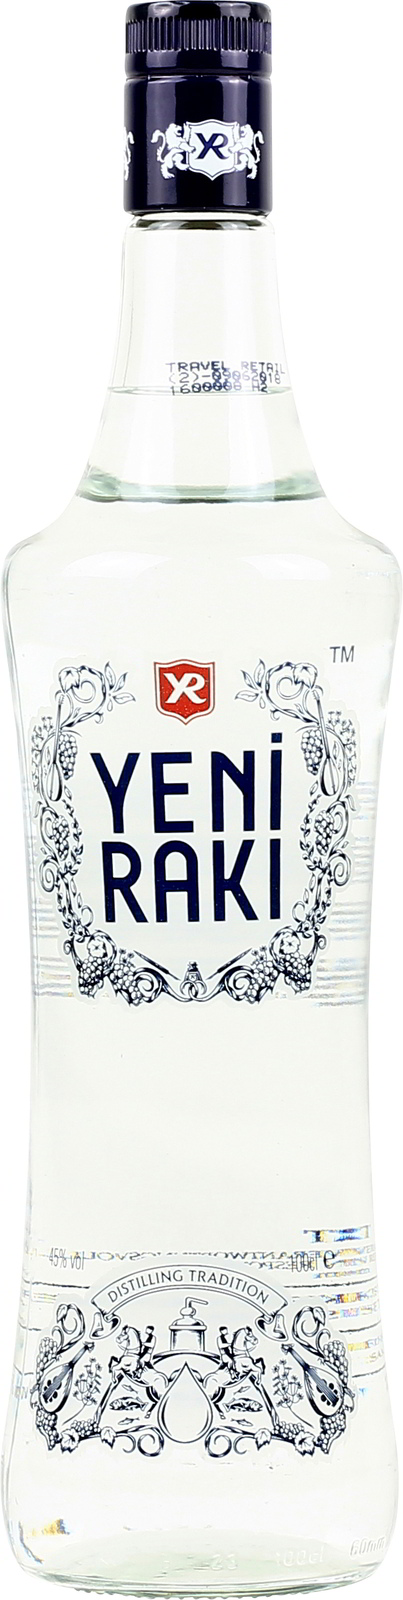 Yeni Raki aus der Türkei günstig kaufen